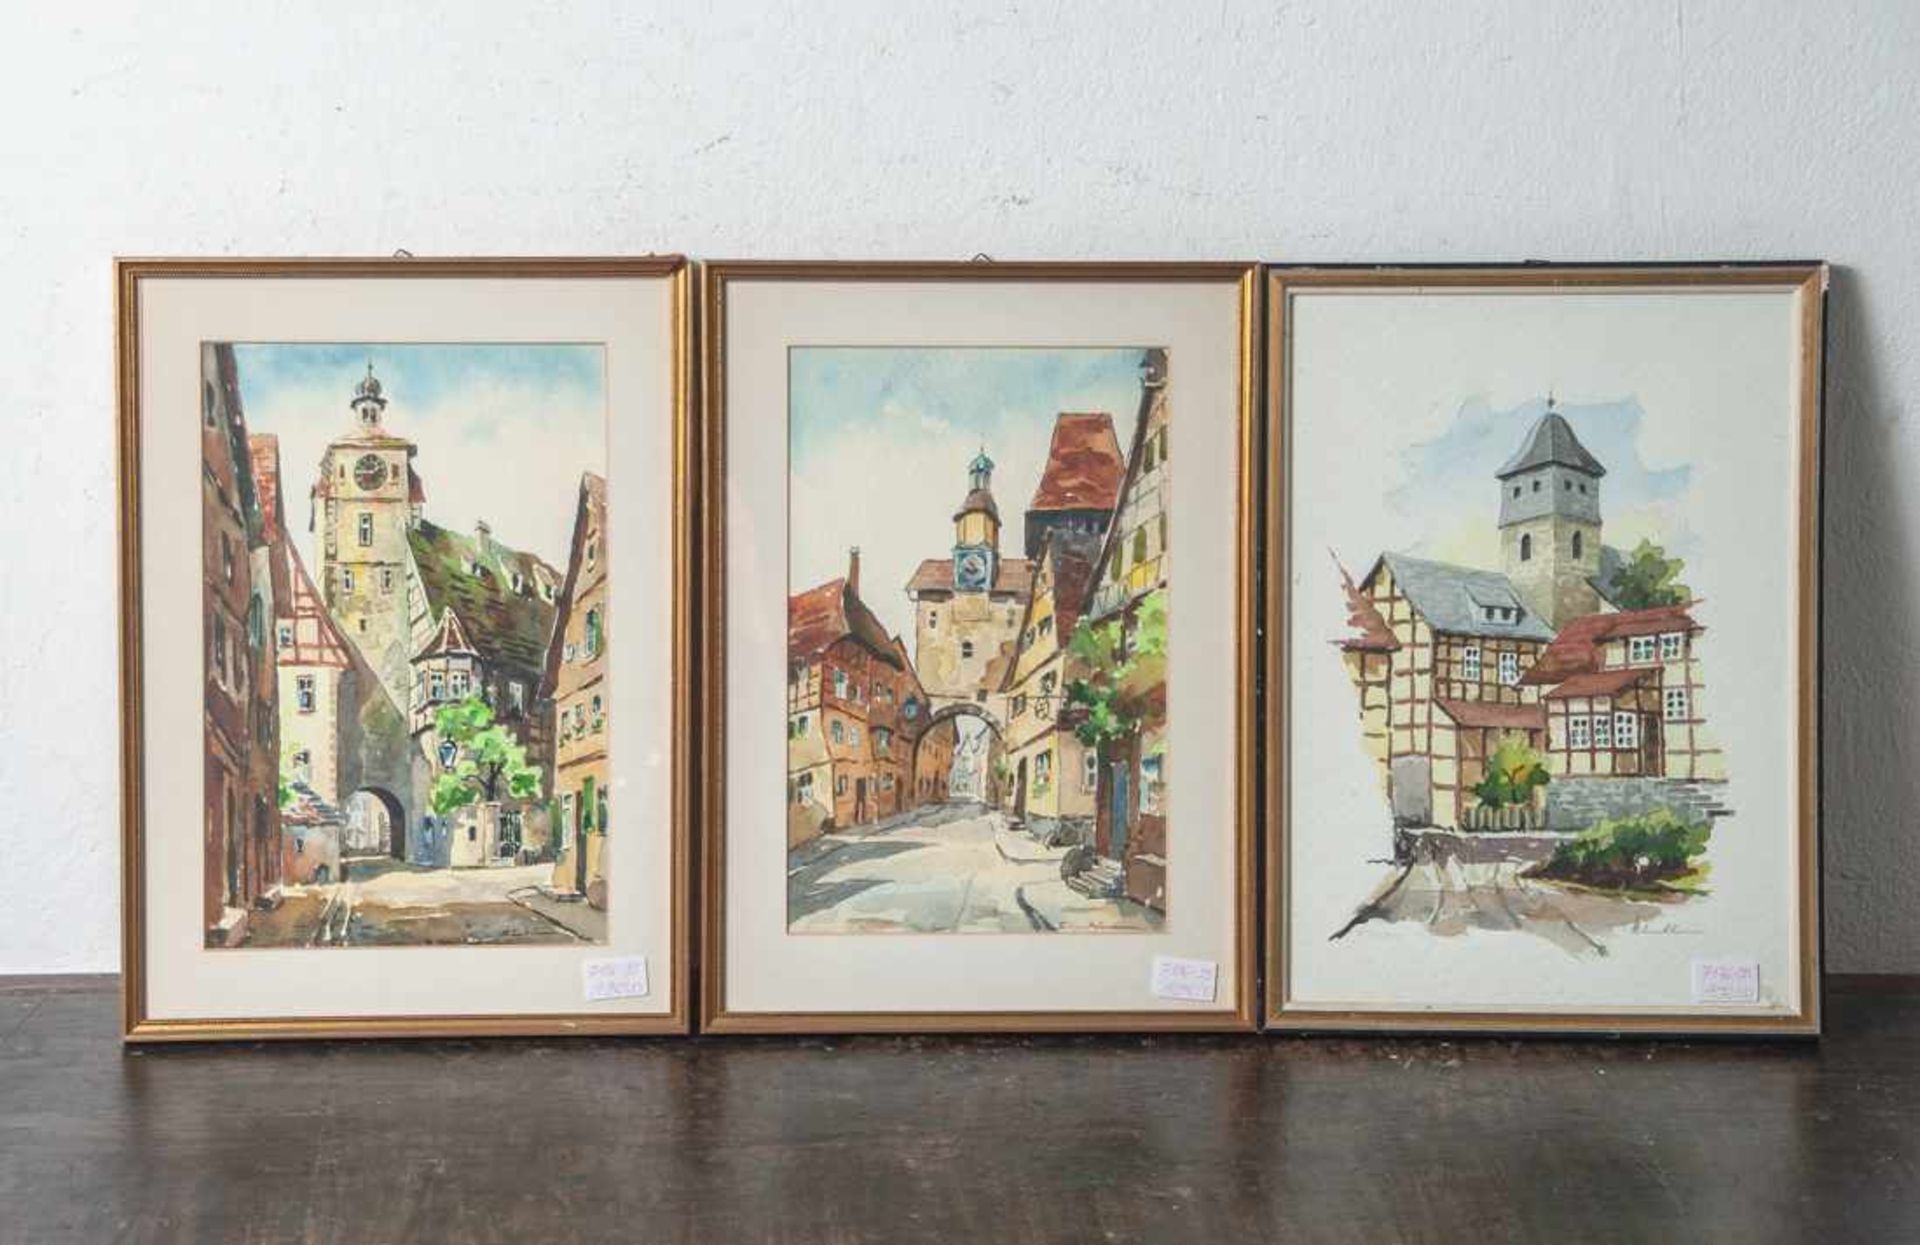 Simshäuser, Karl (1910-1991), Konvolut, 3 Aquarelle (mittelalterliche Stadtansichten mitWehrtürmen),